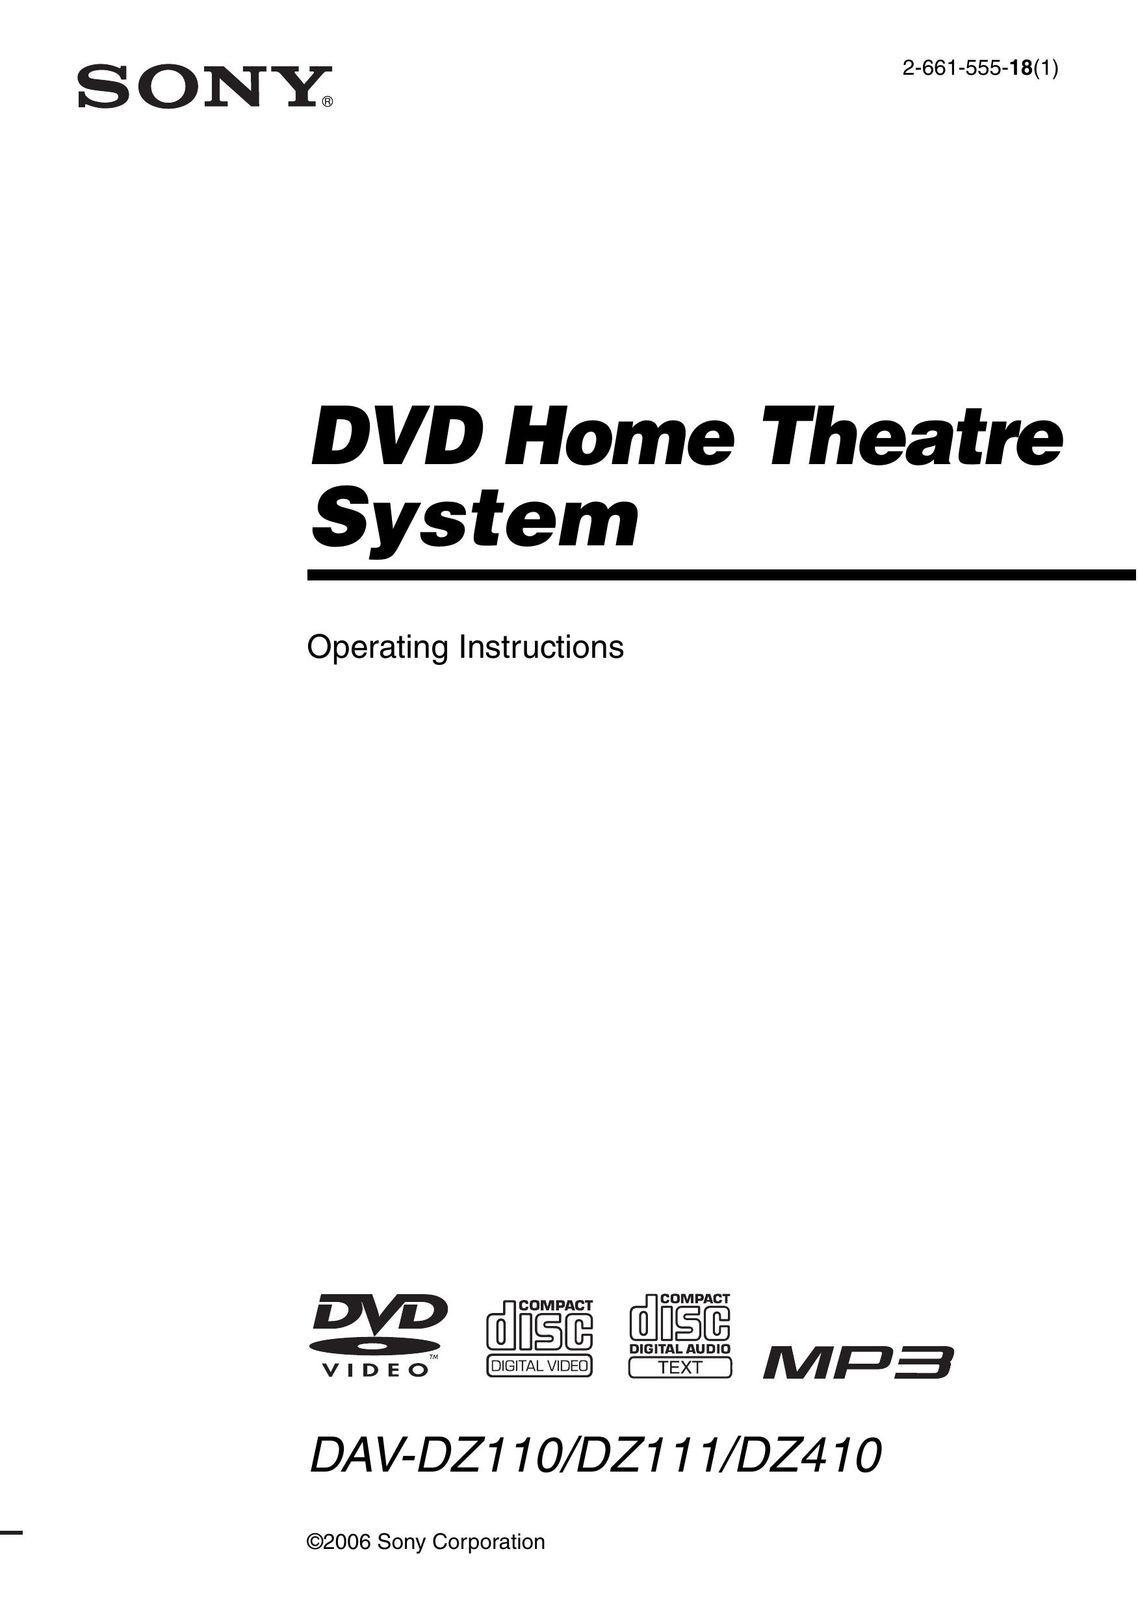 Sony DAV-DZ111 DVD Player User Manual